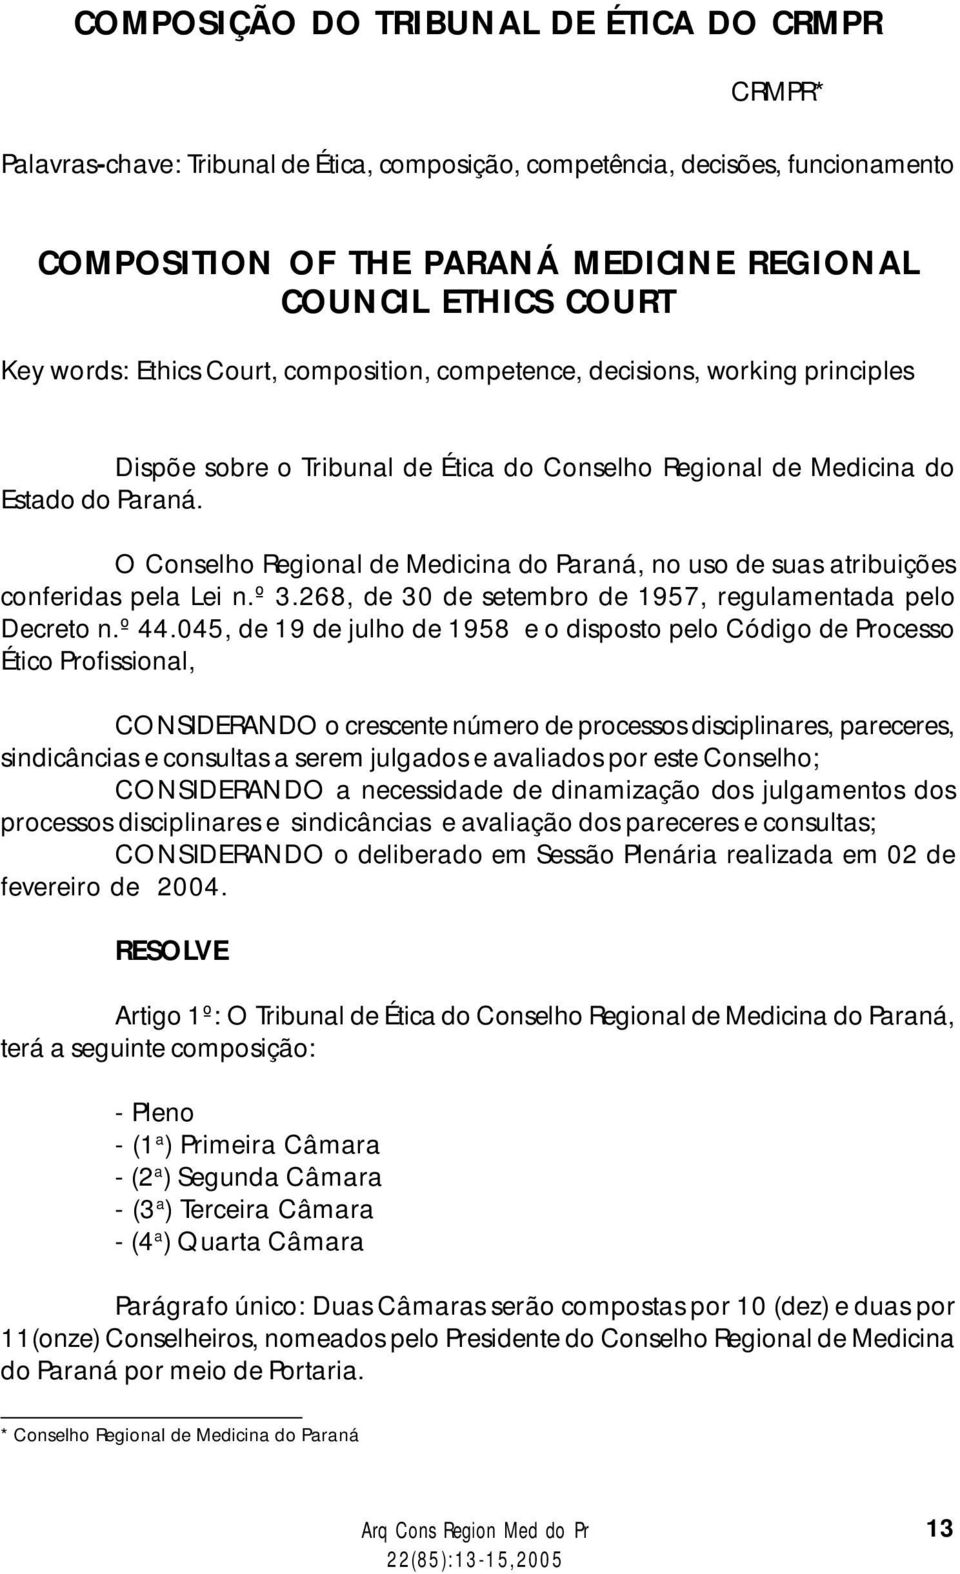 O Conselho Regional de Medicina do Paraná, no uso de suas atribuições conferidas pela Lei n.º 3.268, de 30 de setembro de 1957, regulamentada pelo Decreto n.º 44.